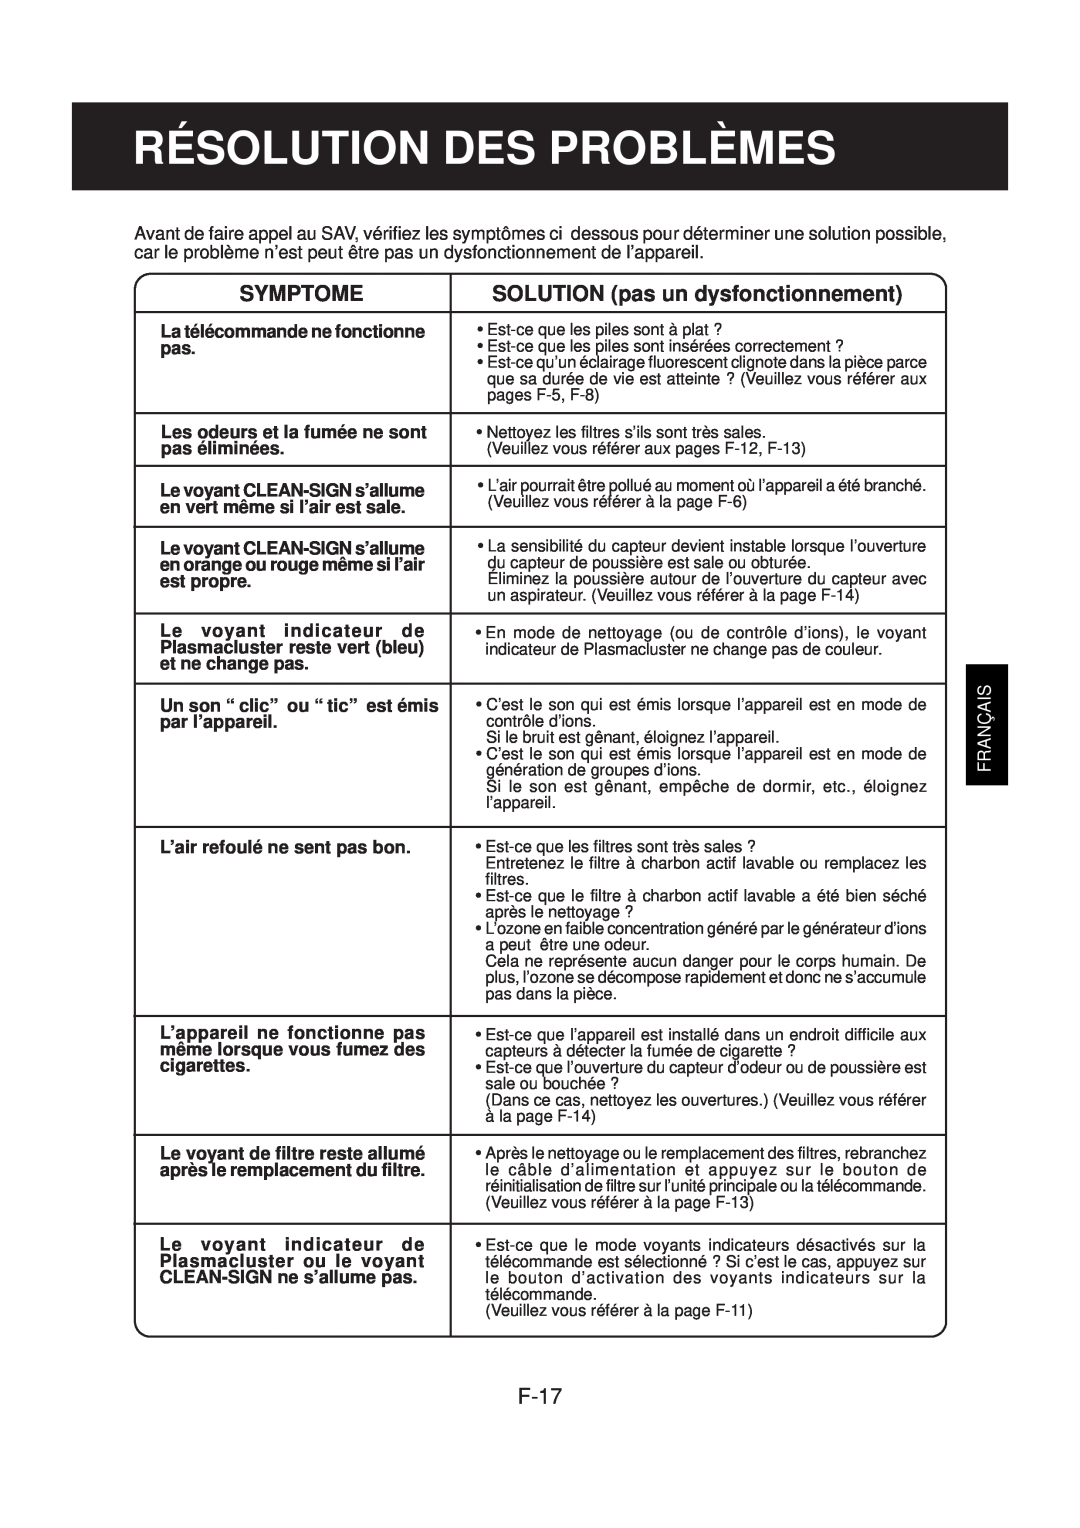 Sharp FP-N40CX operation manual Résolution Des Problèmes, Symptome, SOLUTION pas un dysfonctionnement, F-17, Français 